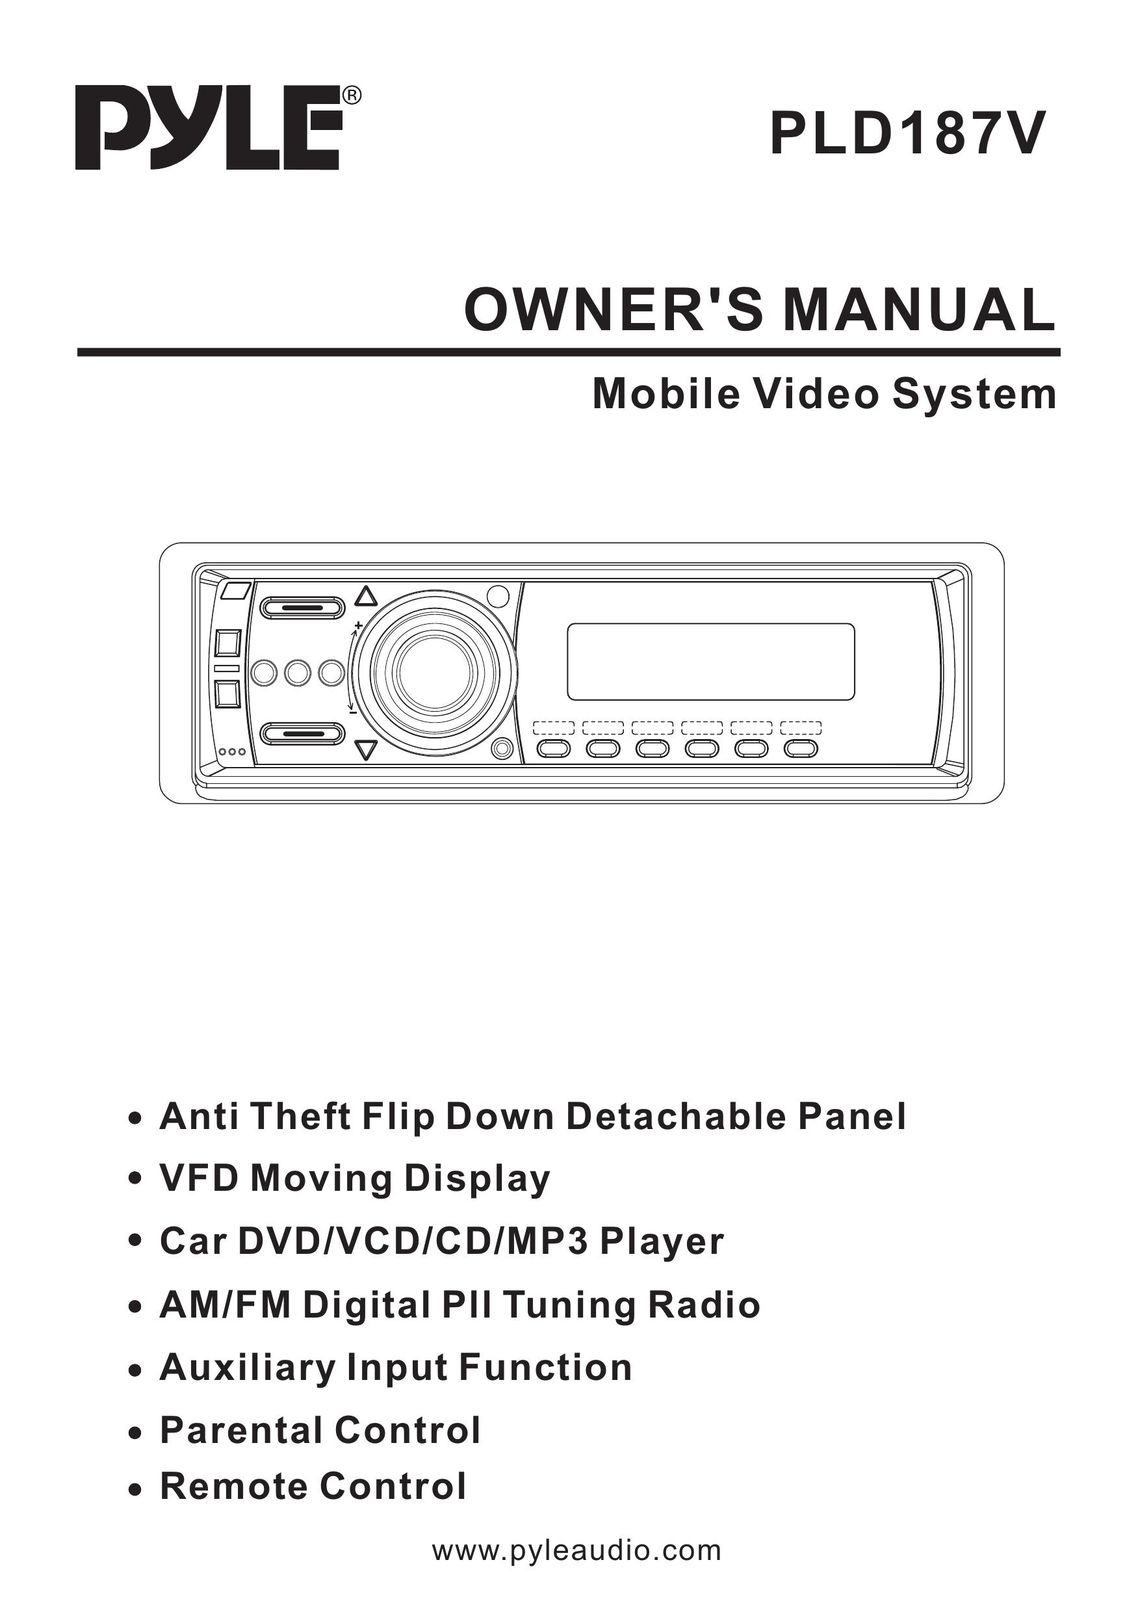 Radio Shack PLD187V Car Video System User Manual